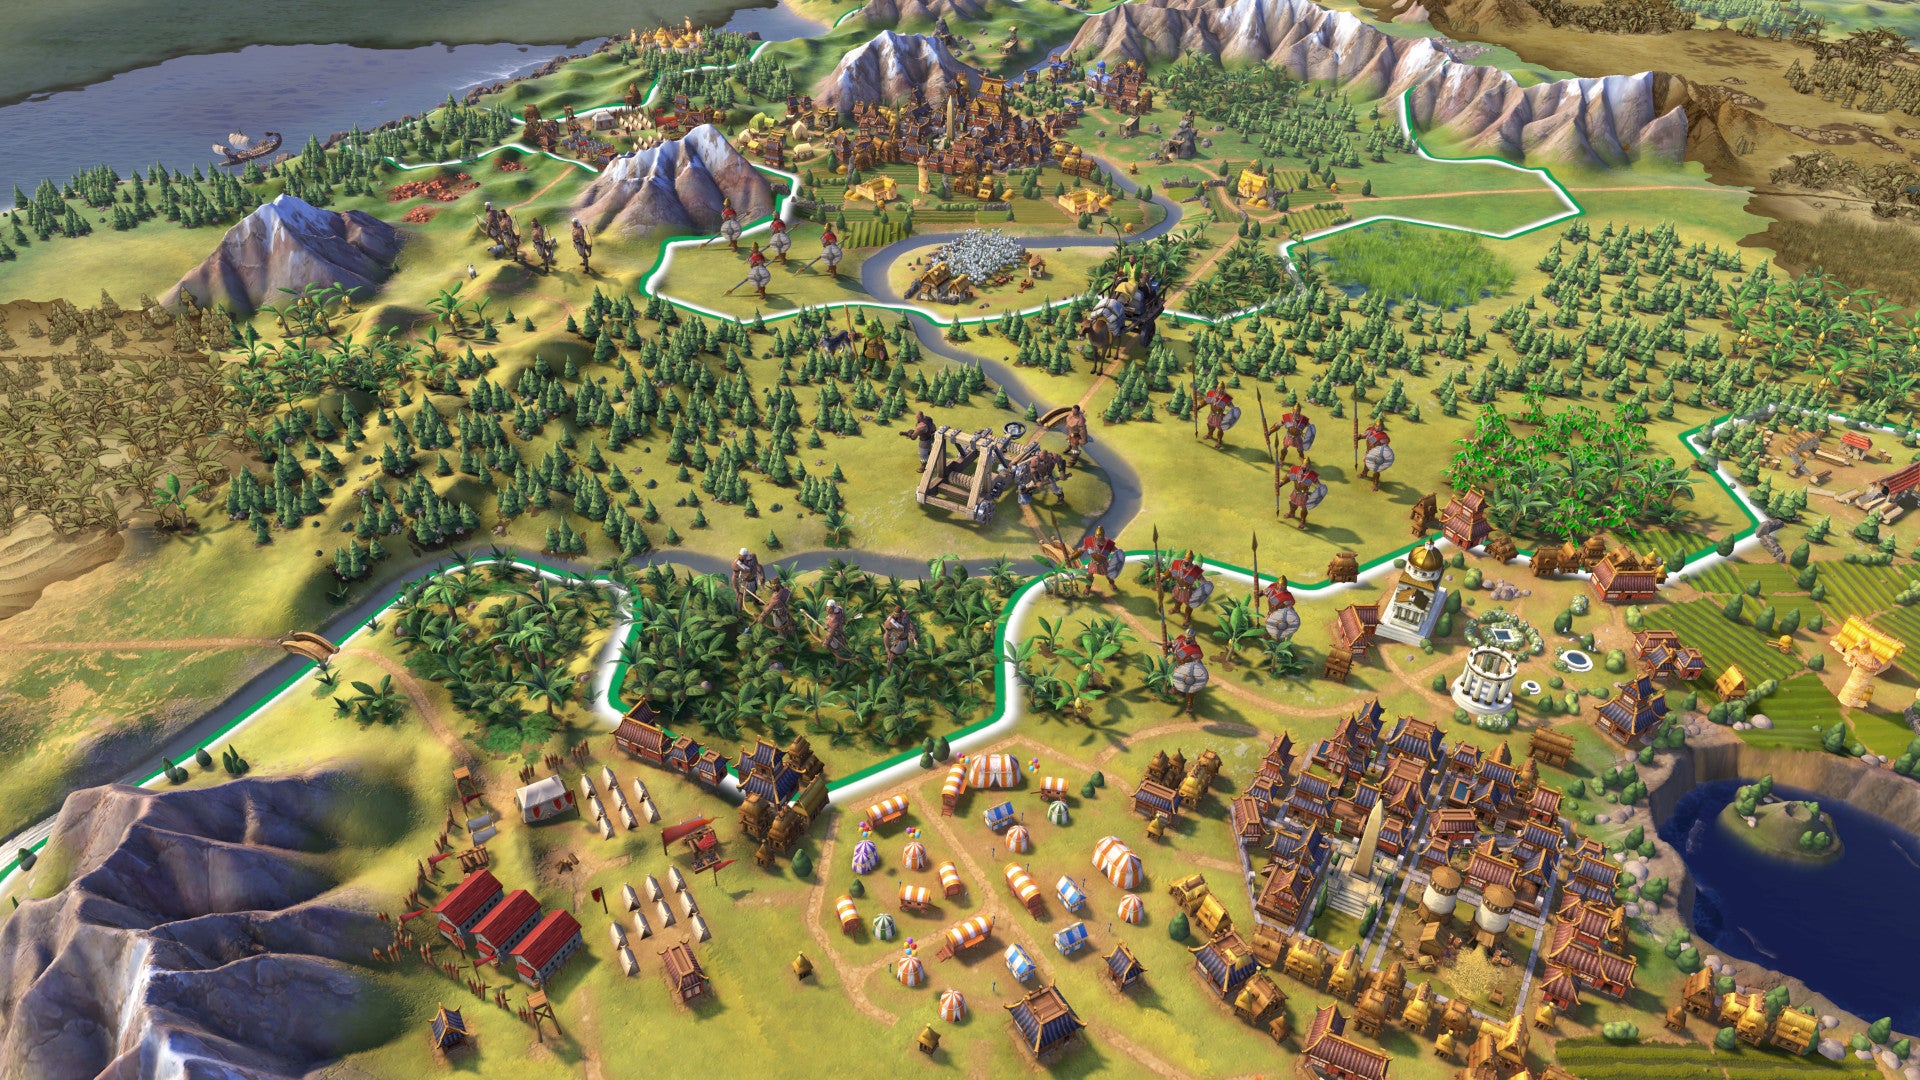 A hexy landscape in a Civilization VI screenshot.